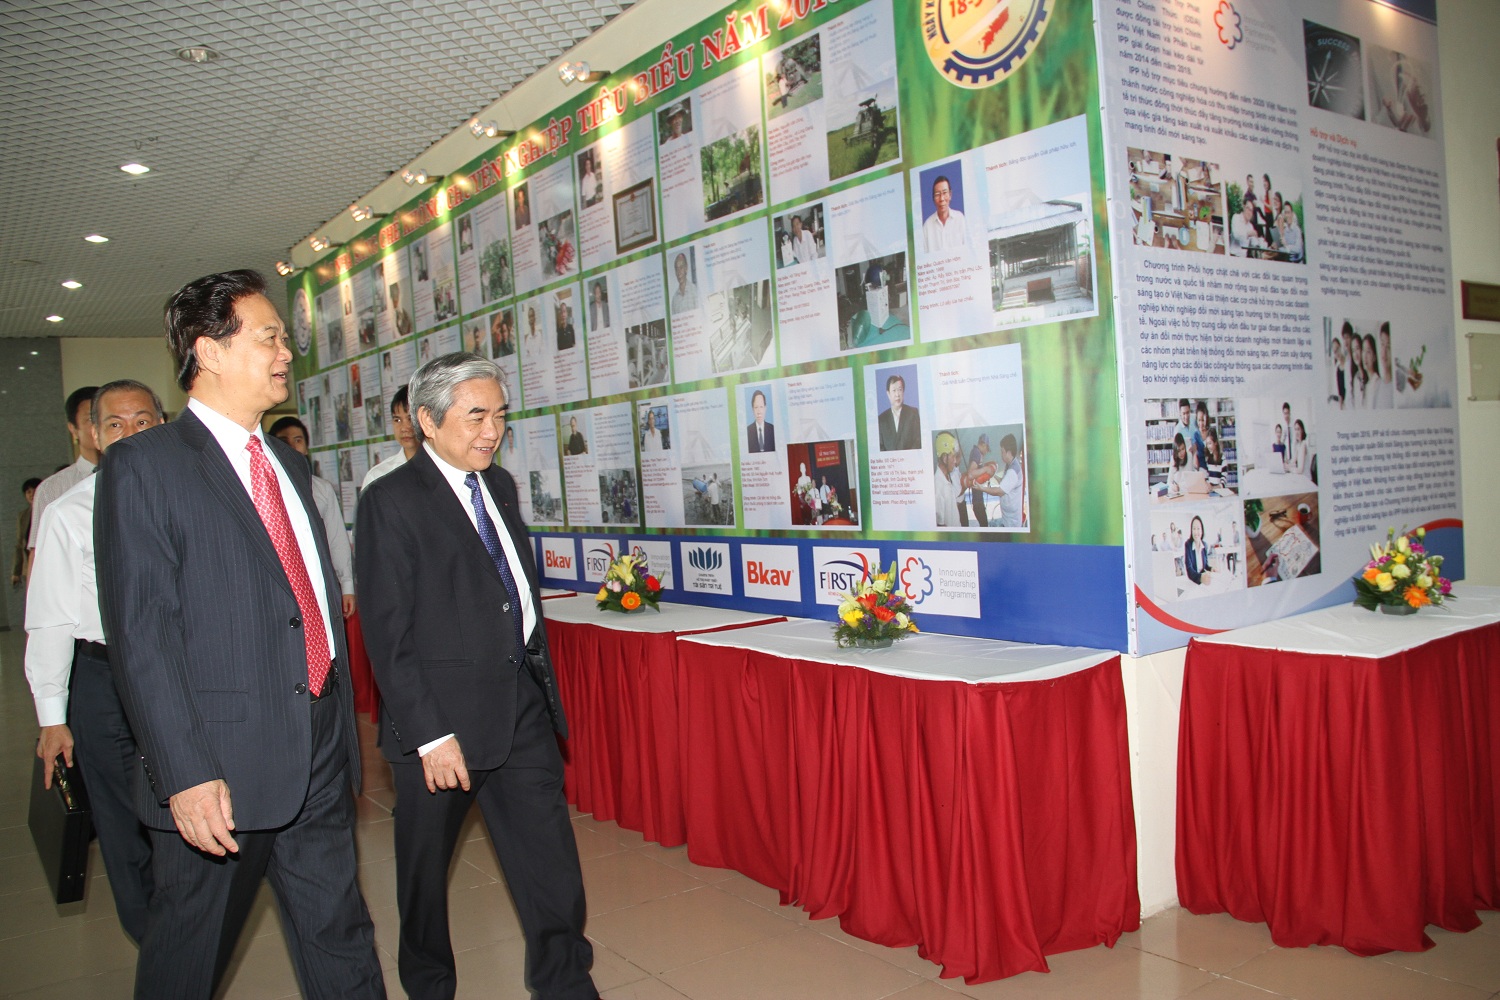 Thủ tướng Nguyễn Tấn Dũng và Bộ trưởng Bộ KH&CN tới buổi Gặp mặt các nhà sáng chế không chuyên tiêu biểu do Bộ KH&CN tổ chức